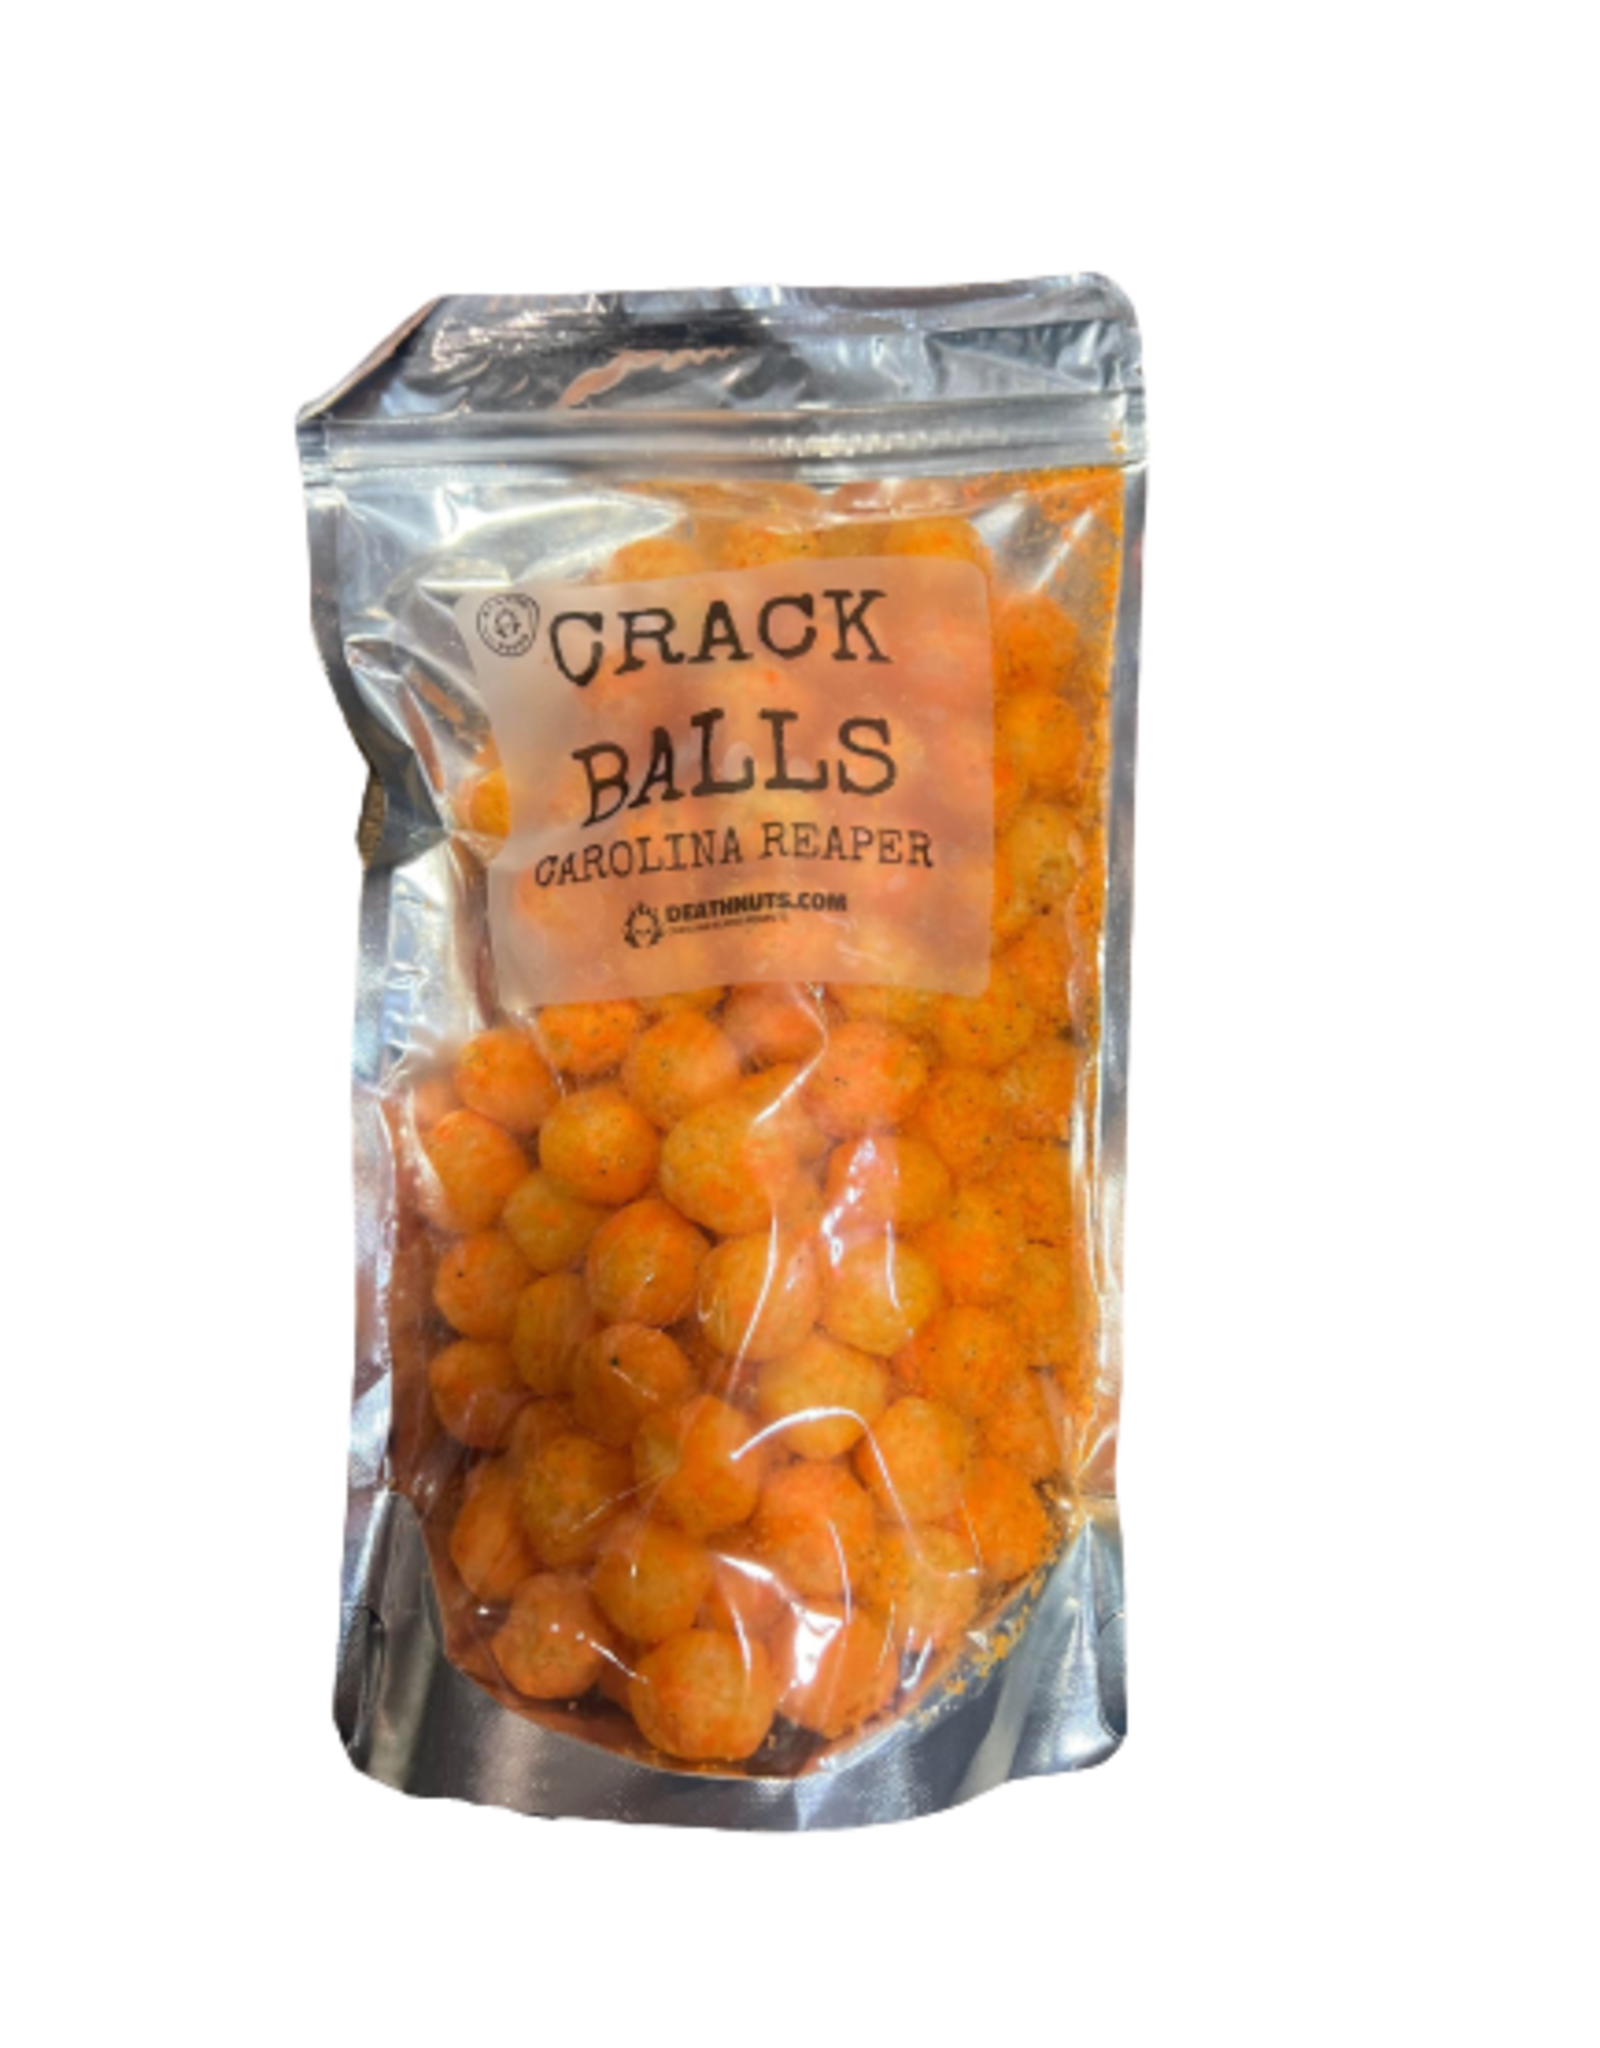 Blazing foods Crack Balls Carolina Reaper